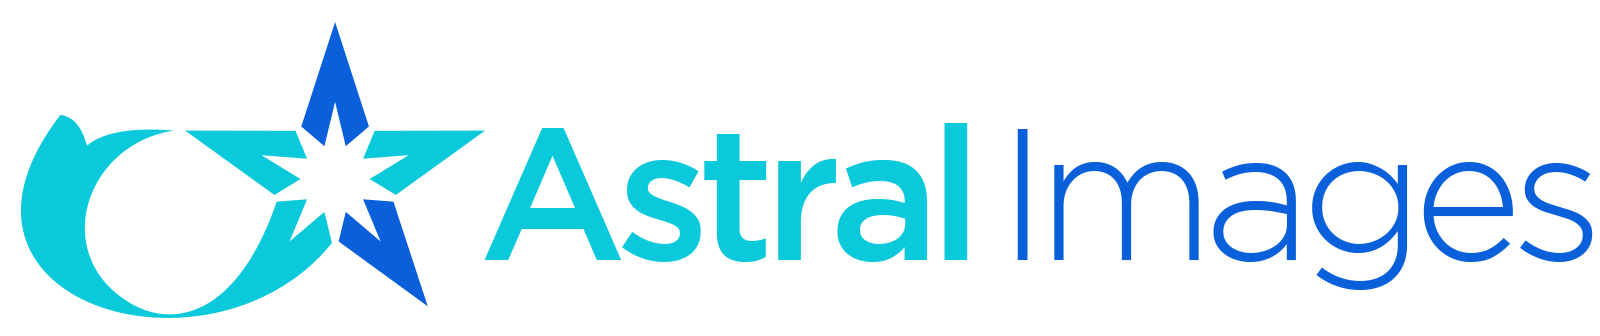 Astral Images logo